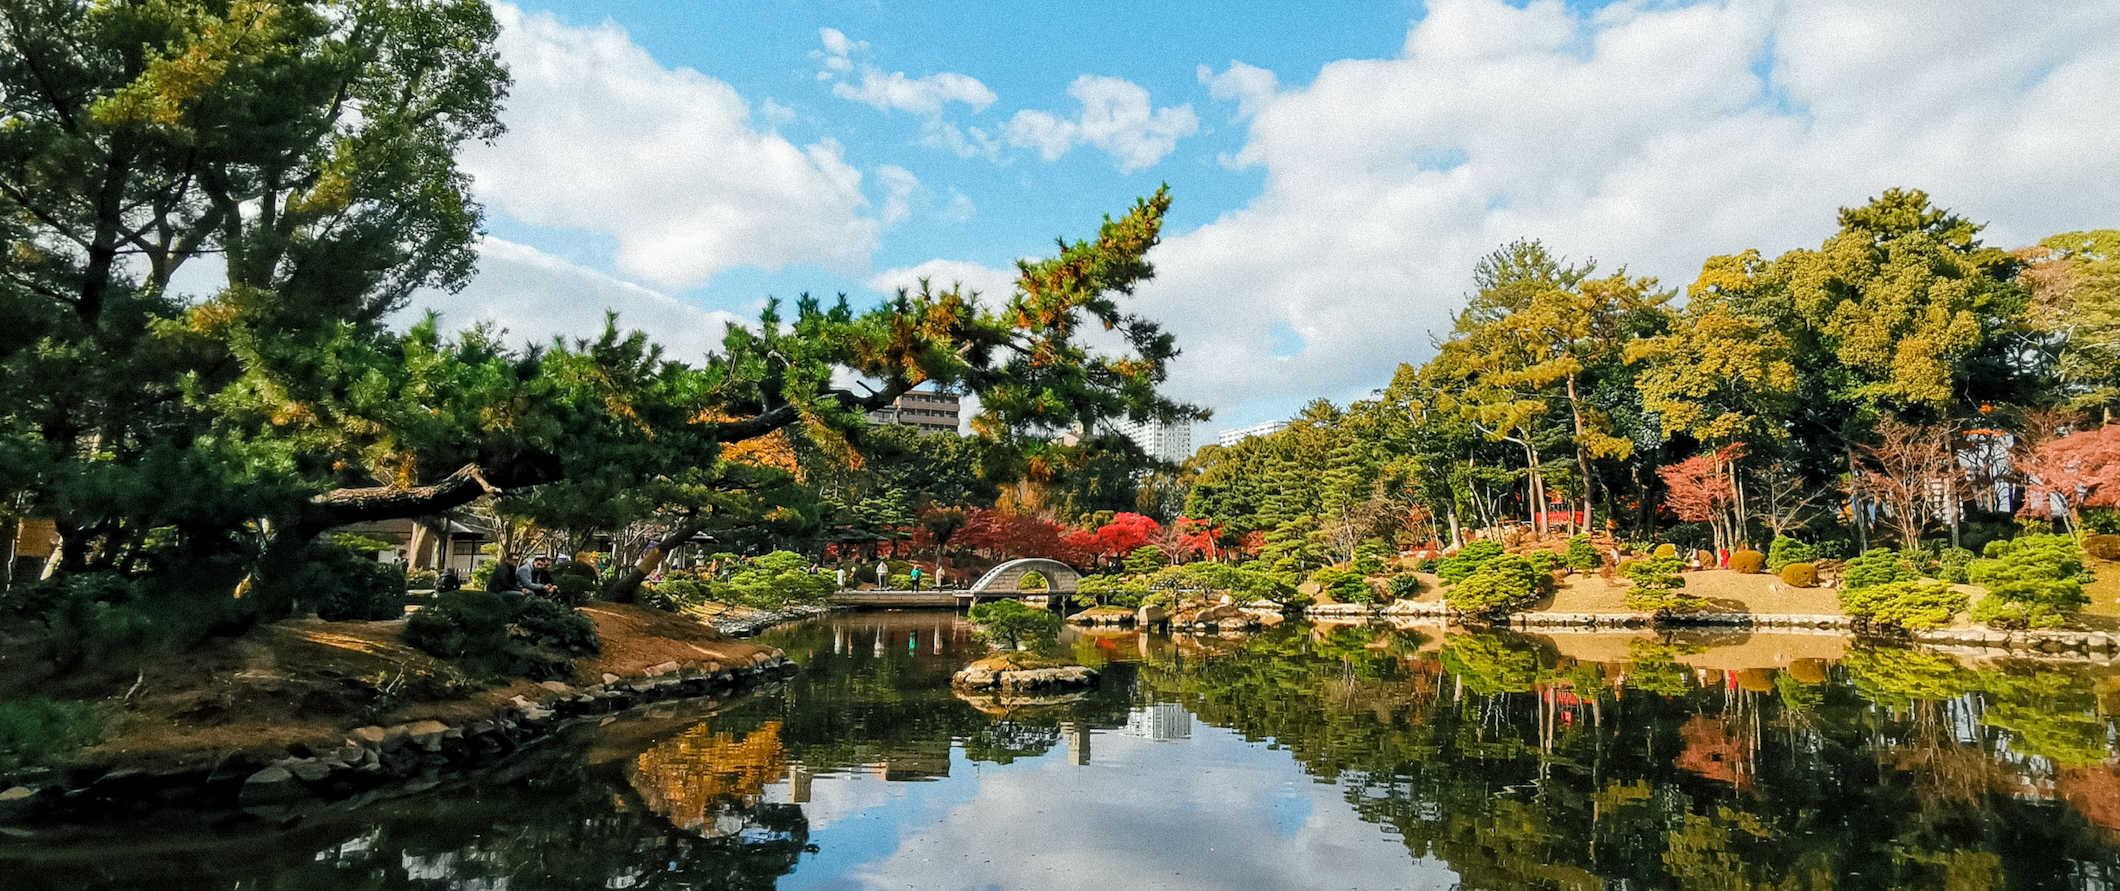 Jardim e lago tranquilos e tranquilos na tranquila Hiroshima, Japão